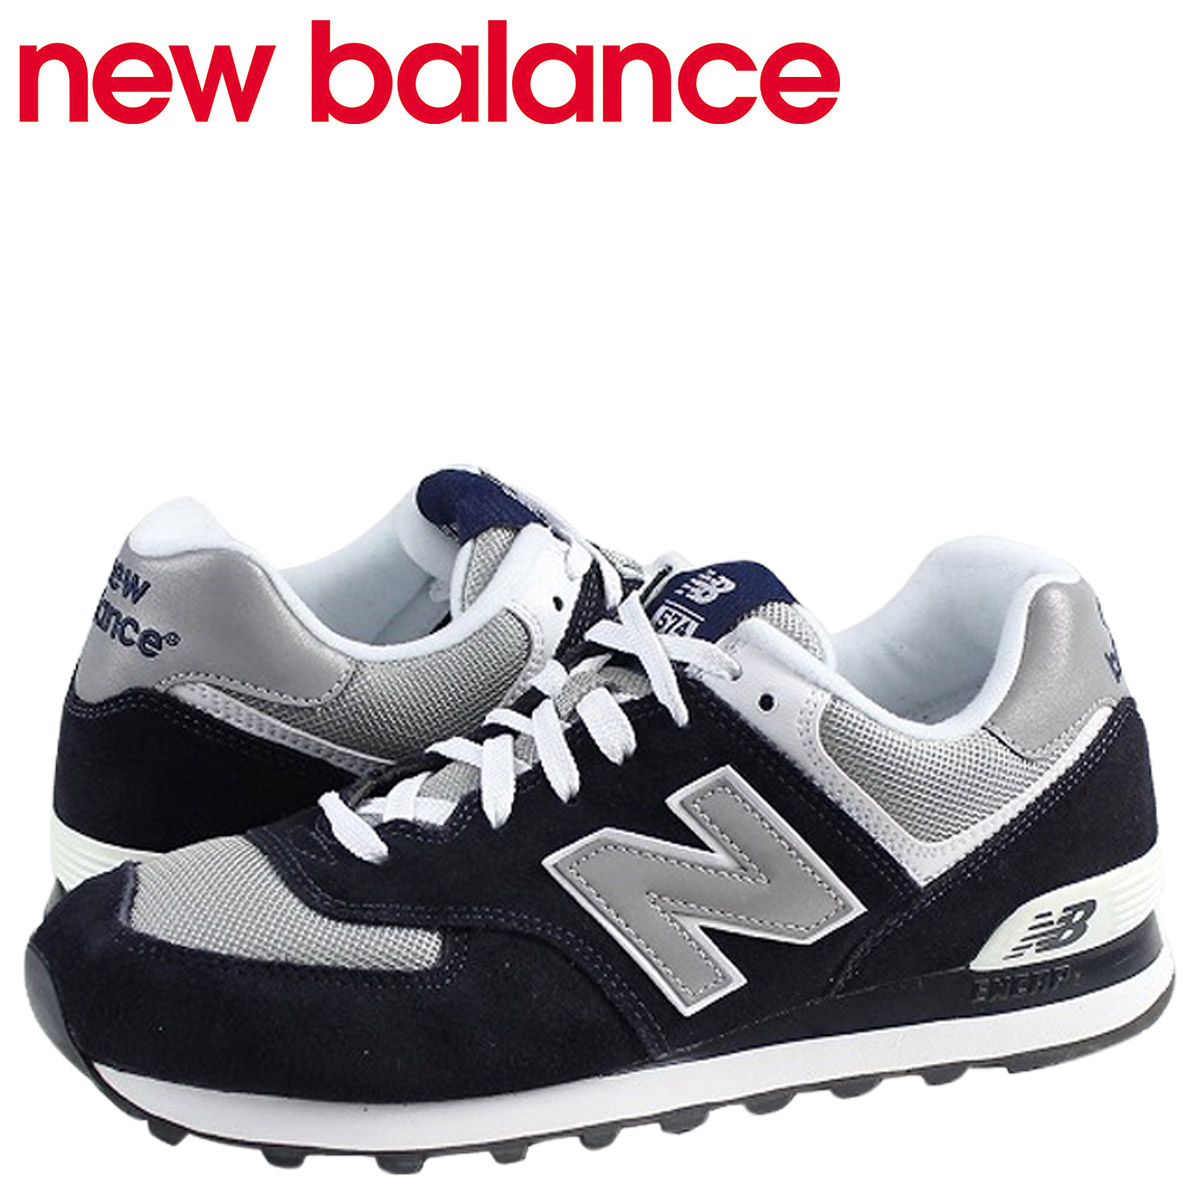 new balance shoes online shop